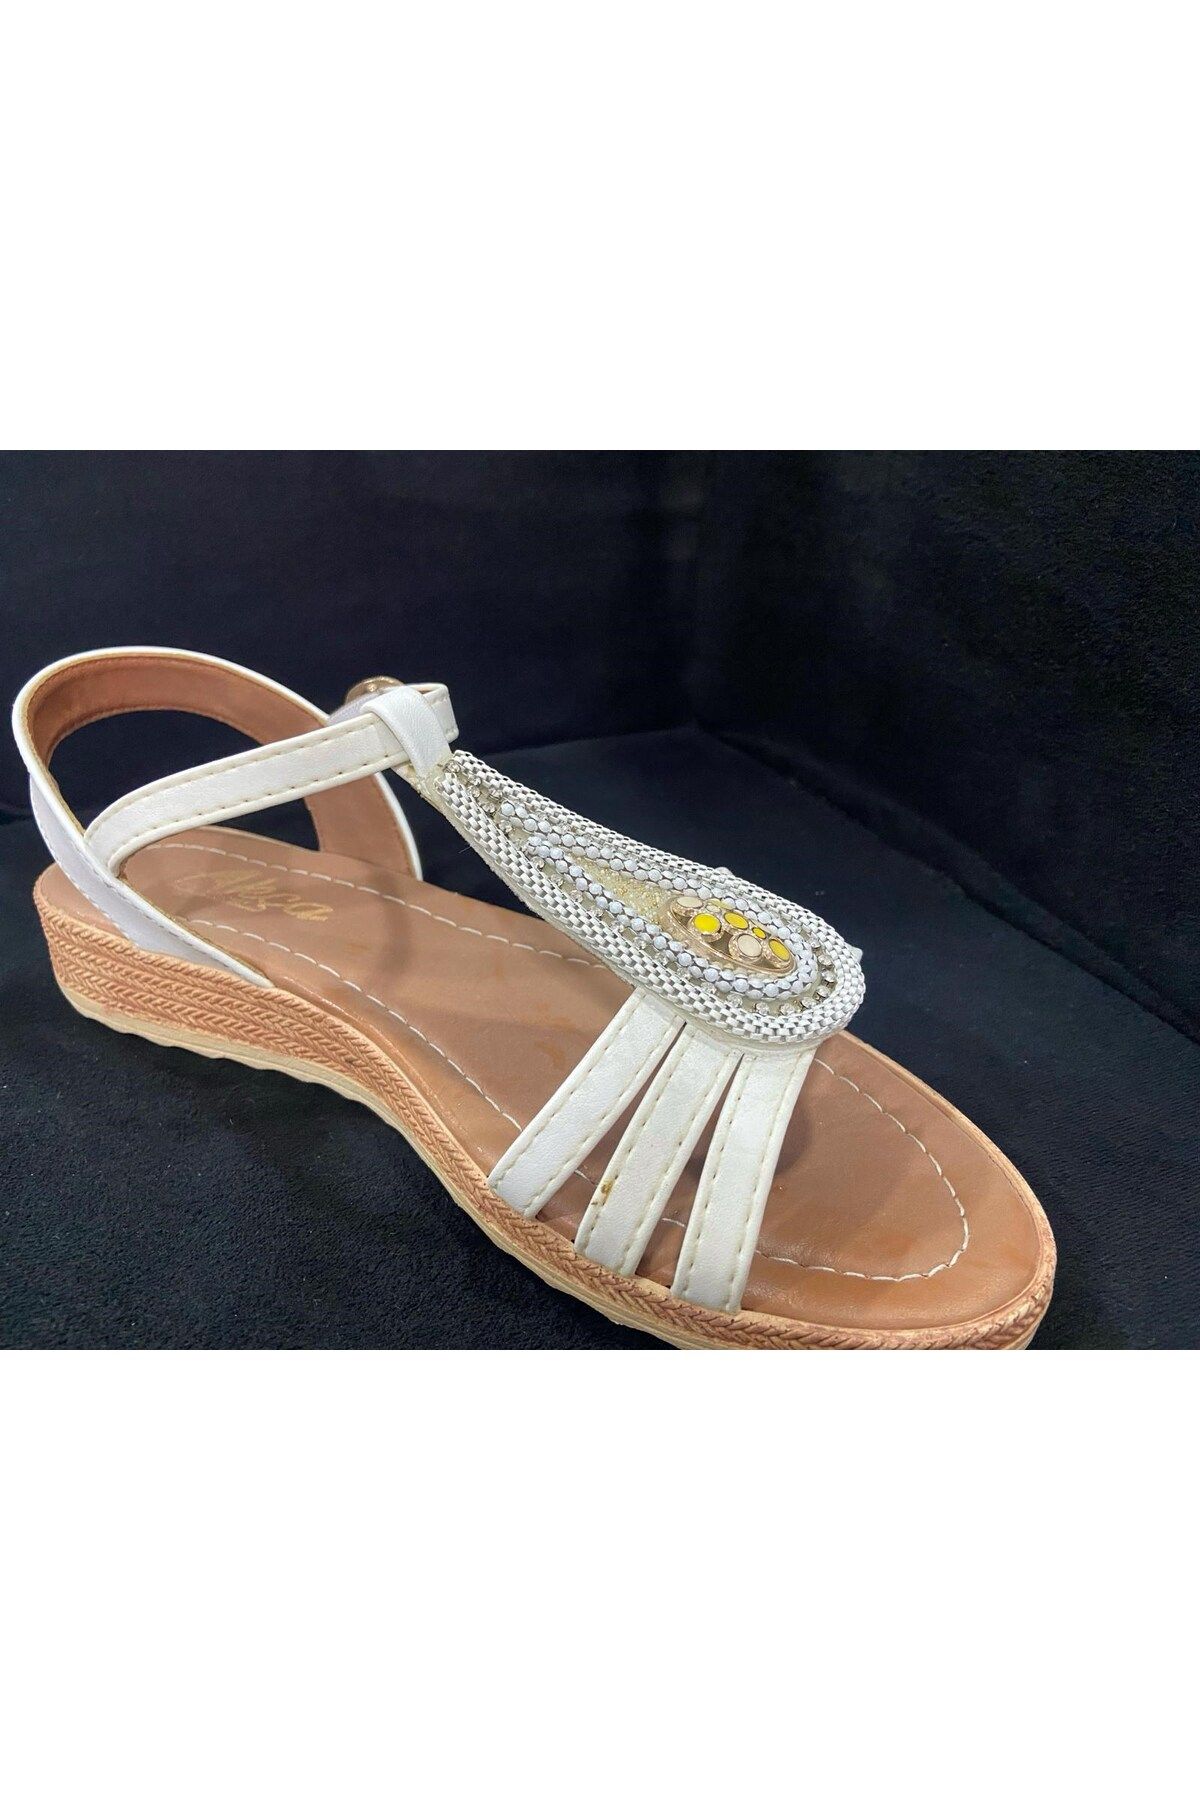 Retro Akça Kadın Beyaz Taşlı Düz Taban Yazlık Rahat Sandalet